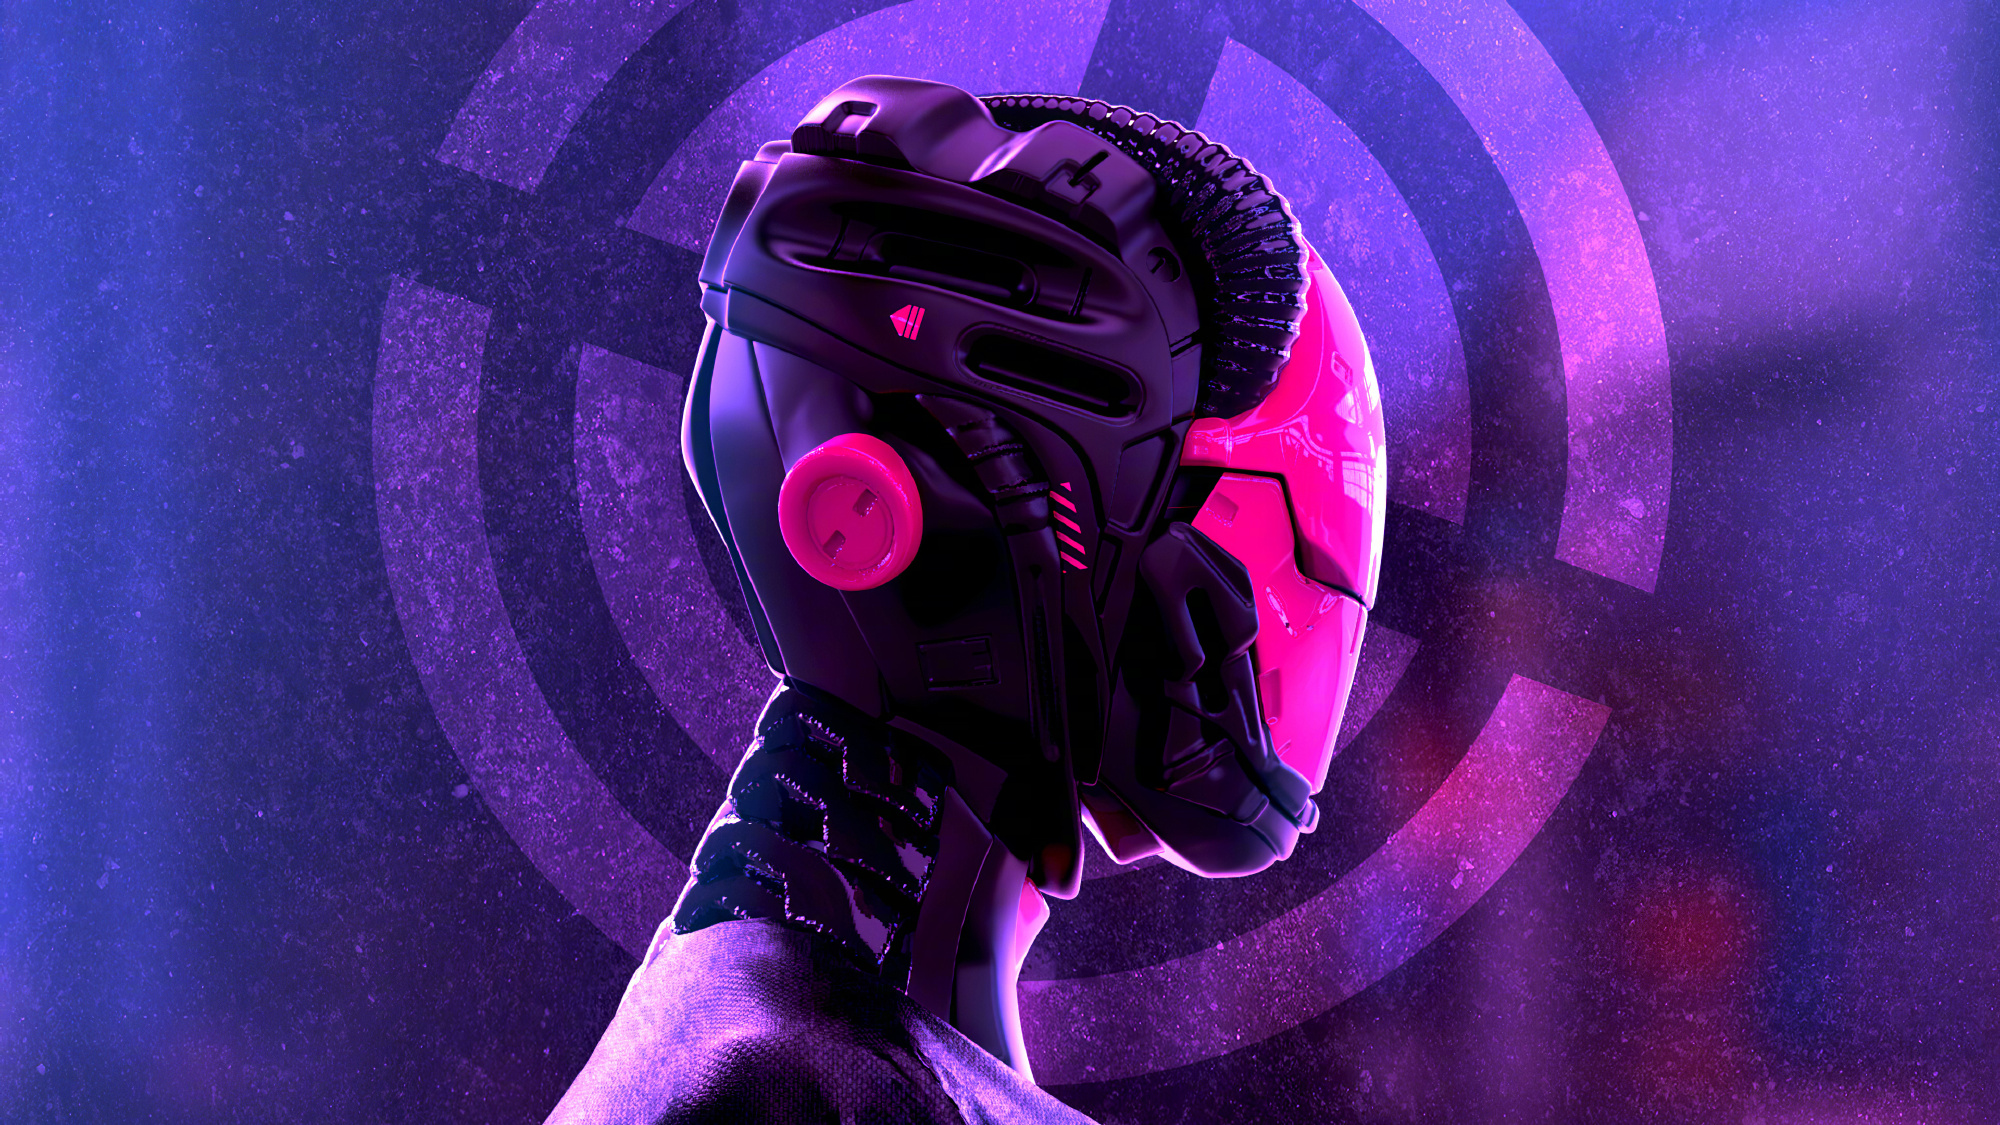 General 2000x1125 cyberpunk helmet